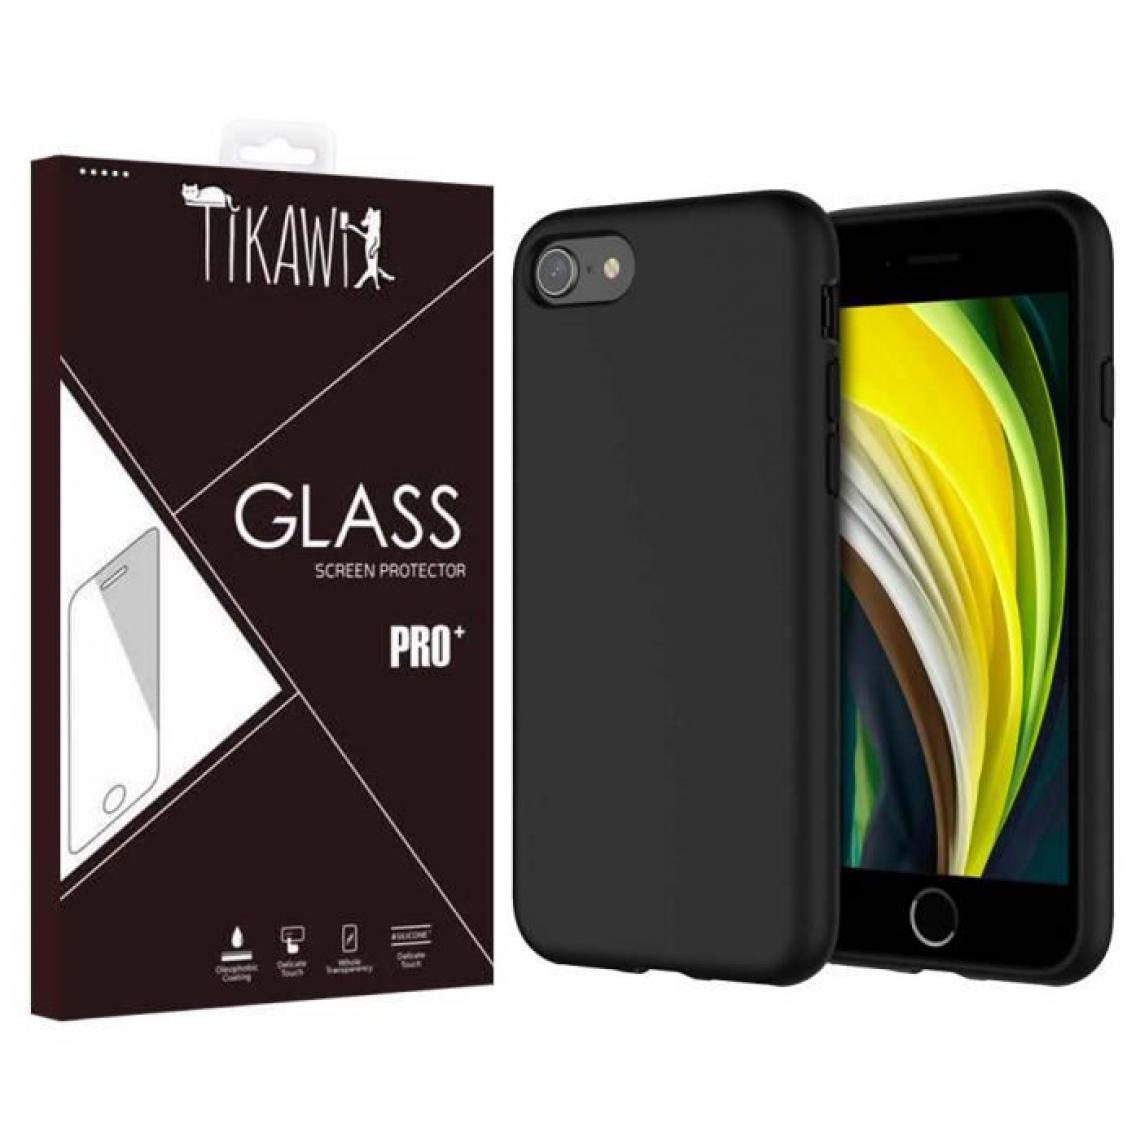 Tikawi - Tikawi Coque Iphone 7 / 8 Silicone Noir + Verre trempé Tikawi [Gel Souple] [Haute Protection] [Anti-Rayure] [Fine et légère] - Protection écran smartphone